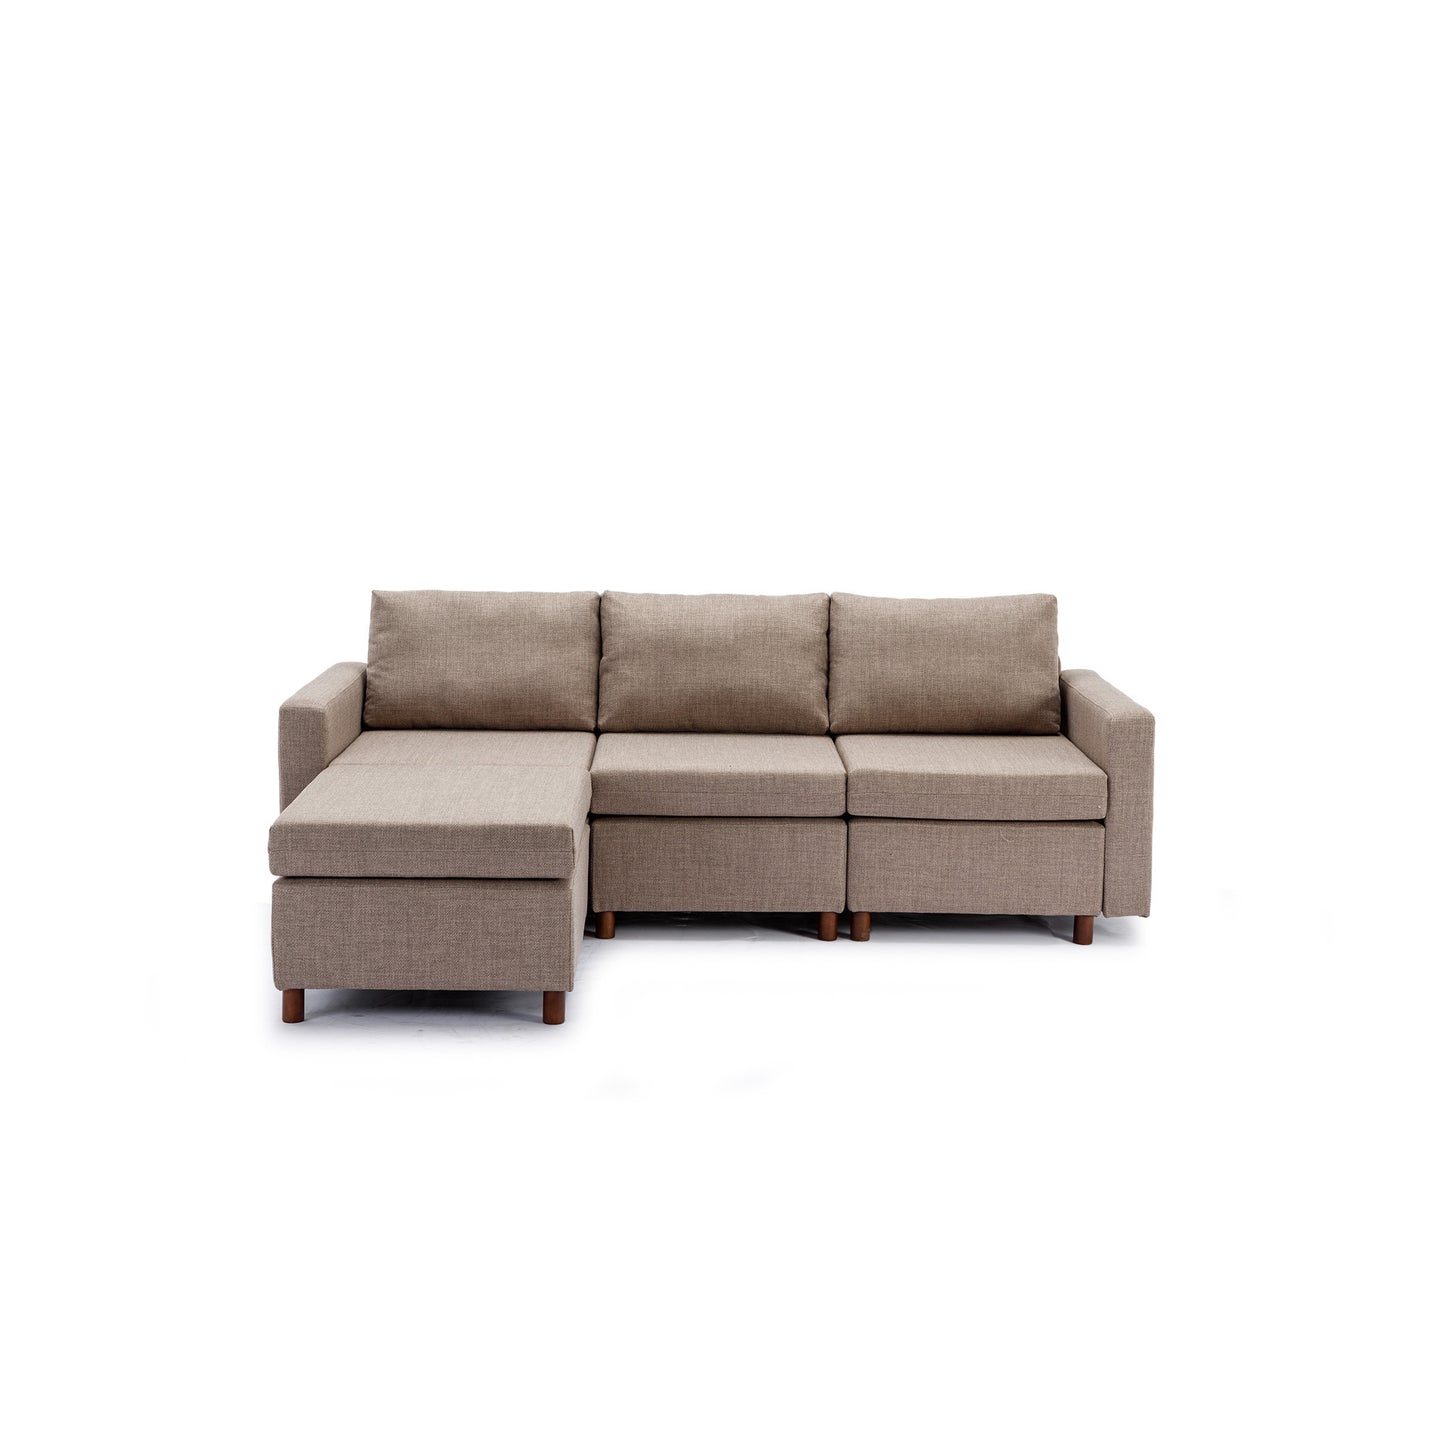 3 Seat Module Sectional Sofa in Brown w/ Ottoman